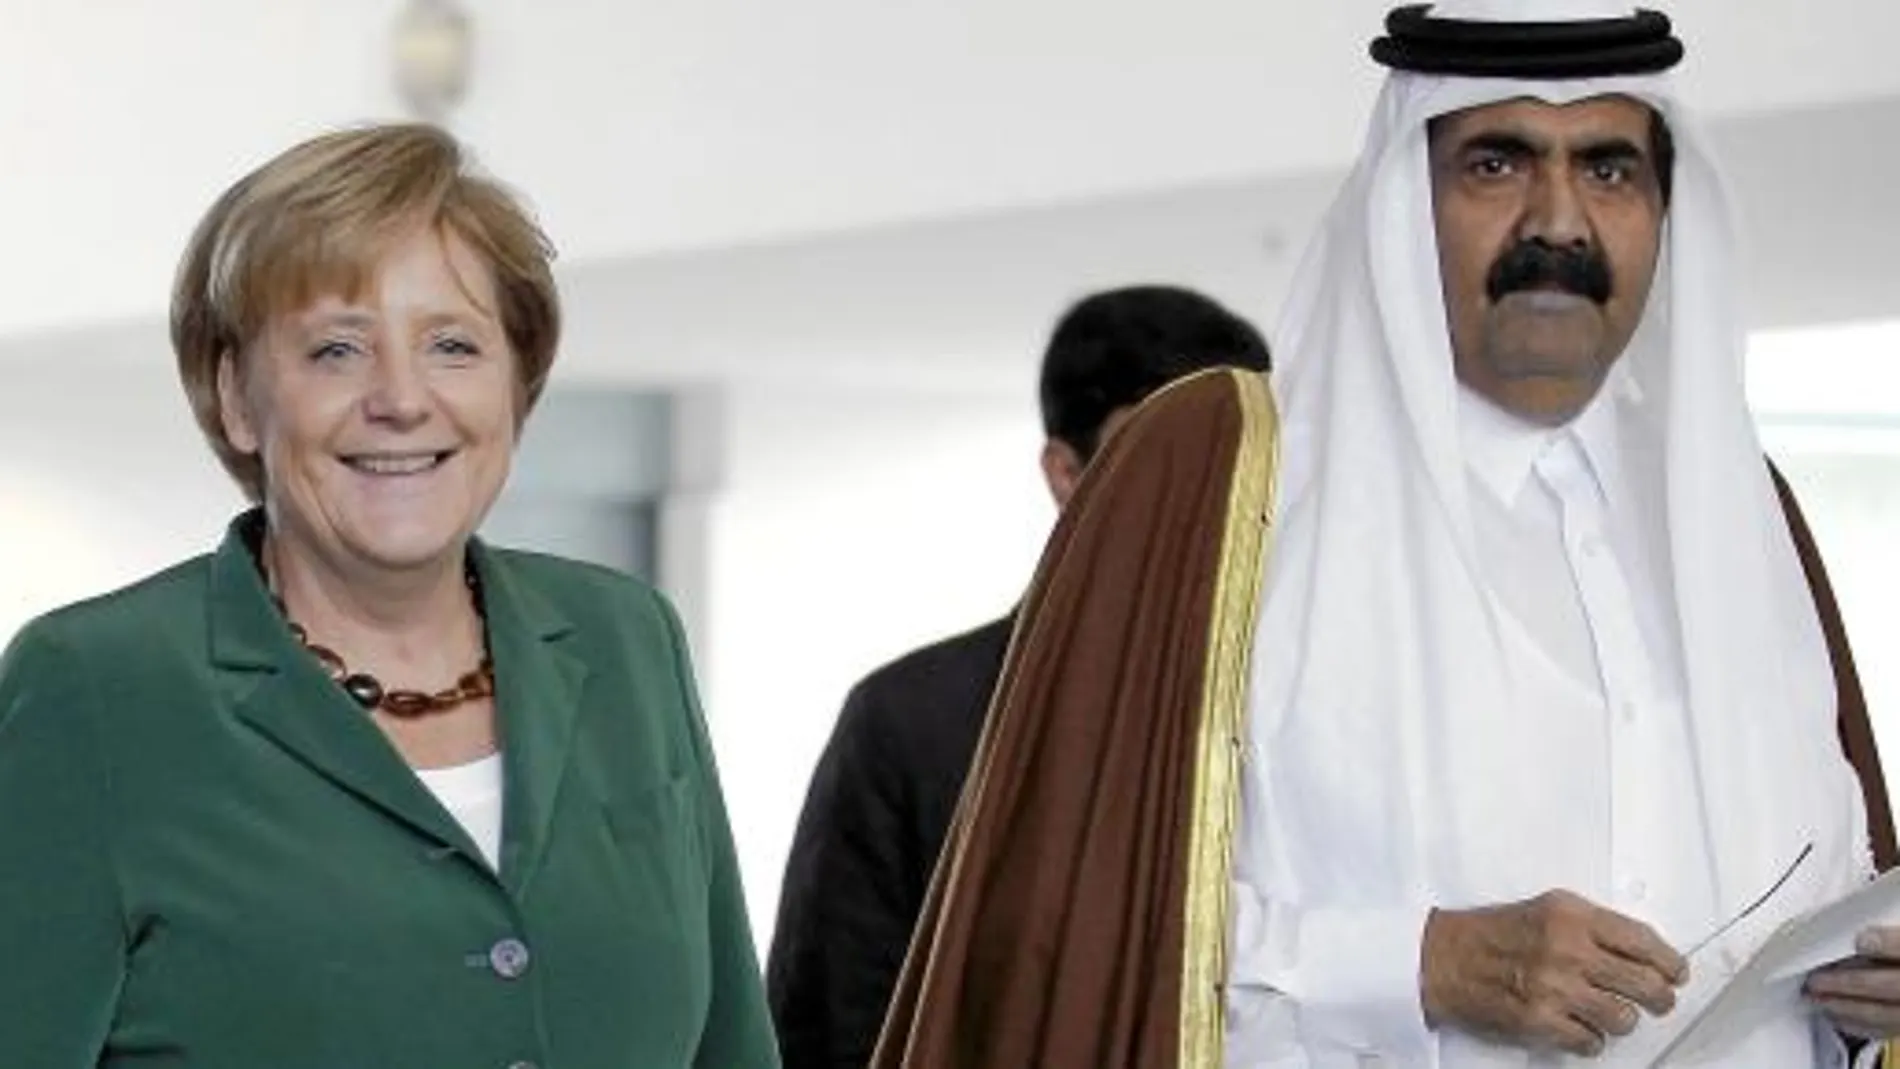 Merkel, en la imagen con el emir de Qatar en septiembre, ha mostrado su neutralidad sobre la operación.